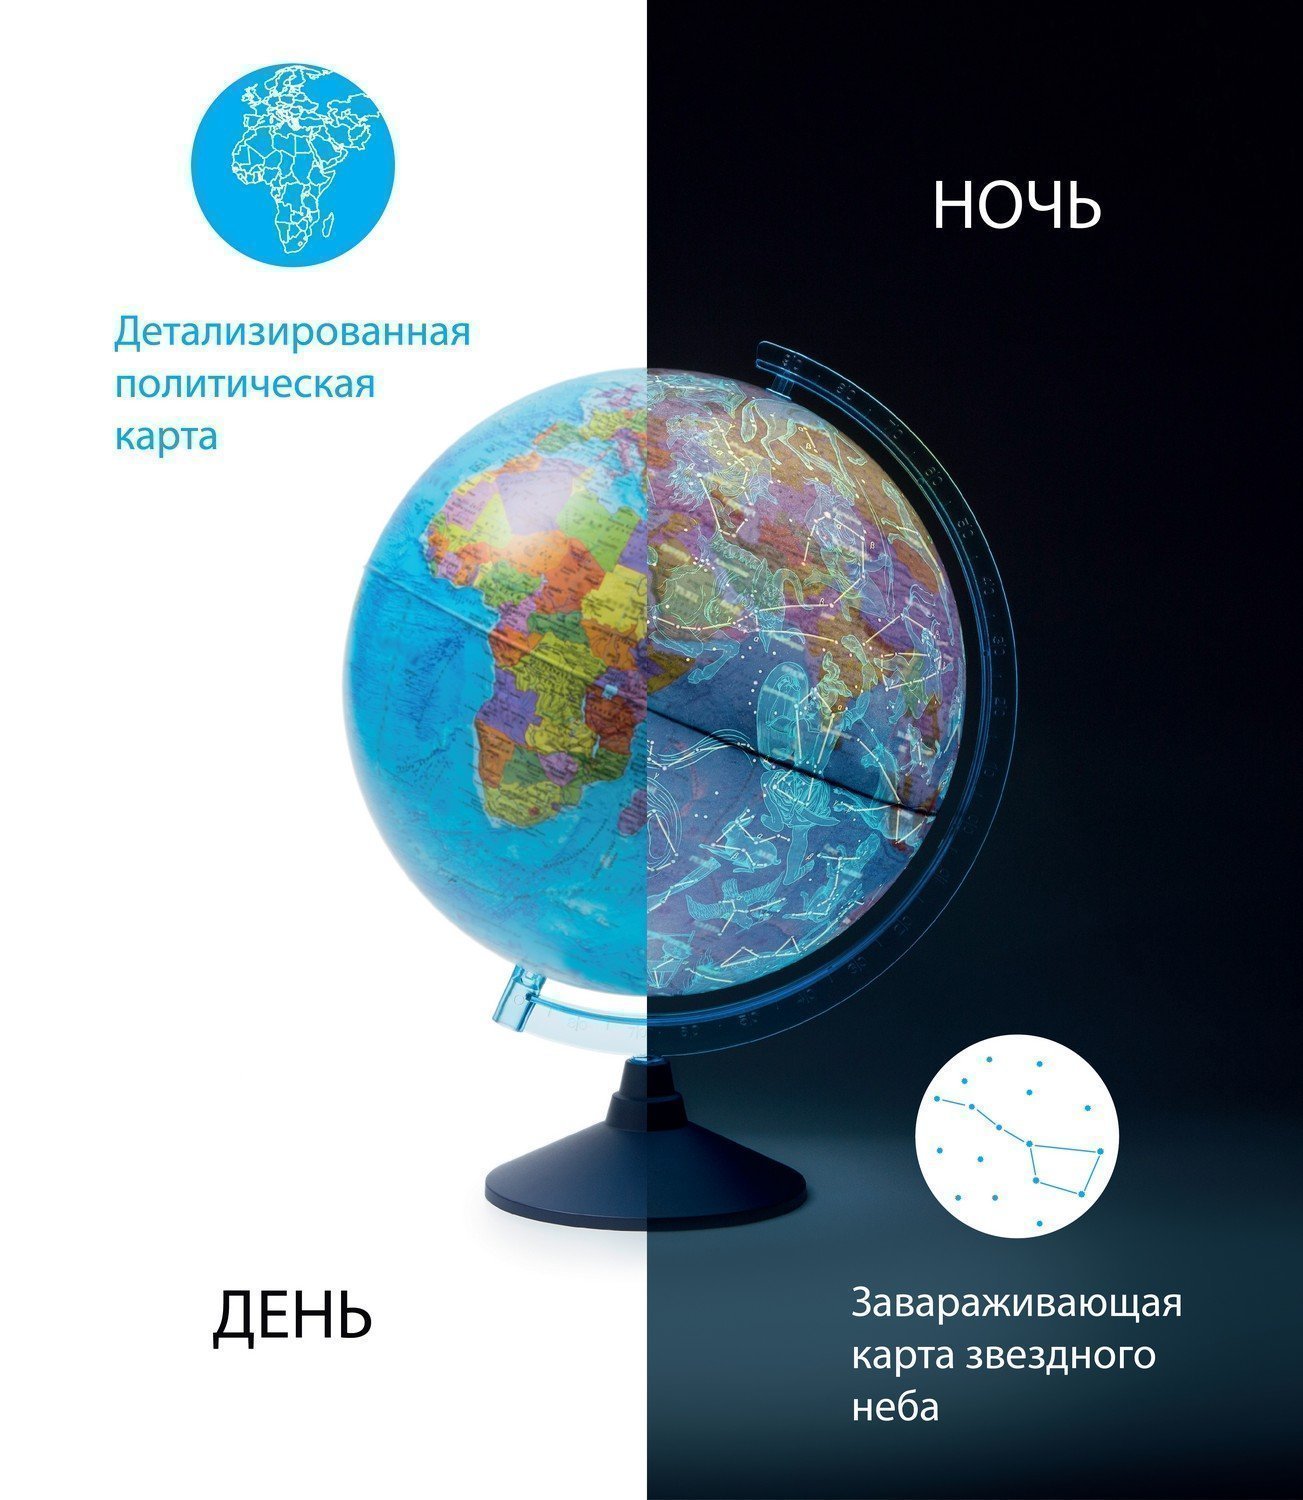 Глобус "День и ночь" с двойной картой - политической и звездно INT12500308